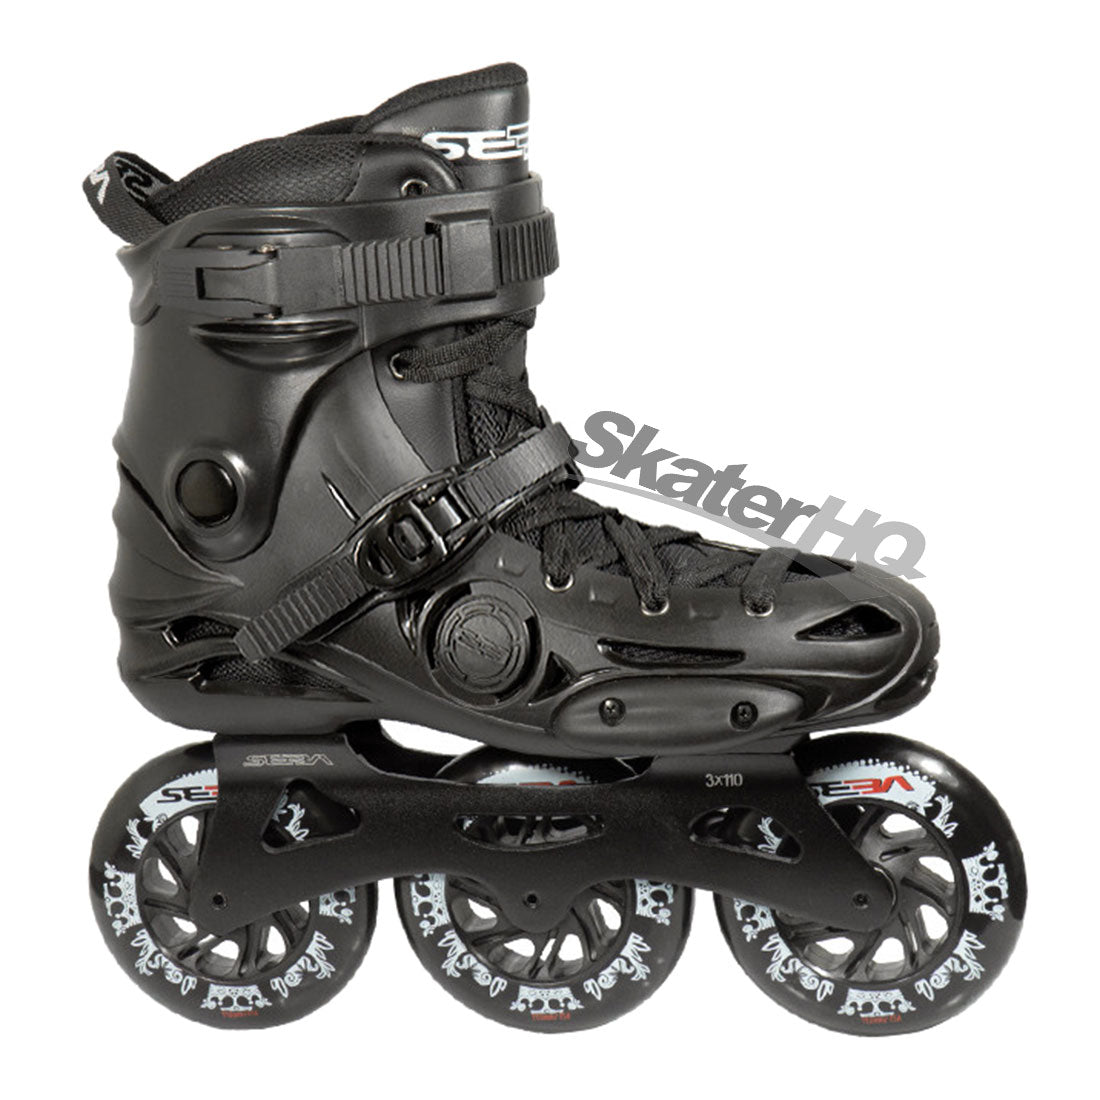 Seba E3 310 Premium Black - 13US EU47 Inline Rec Skates